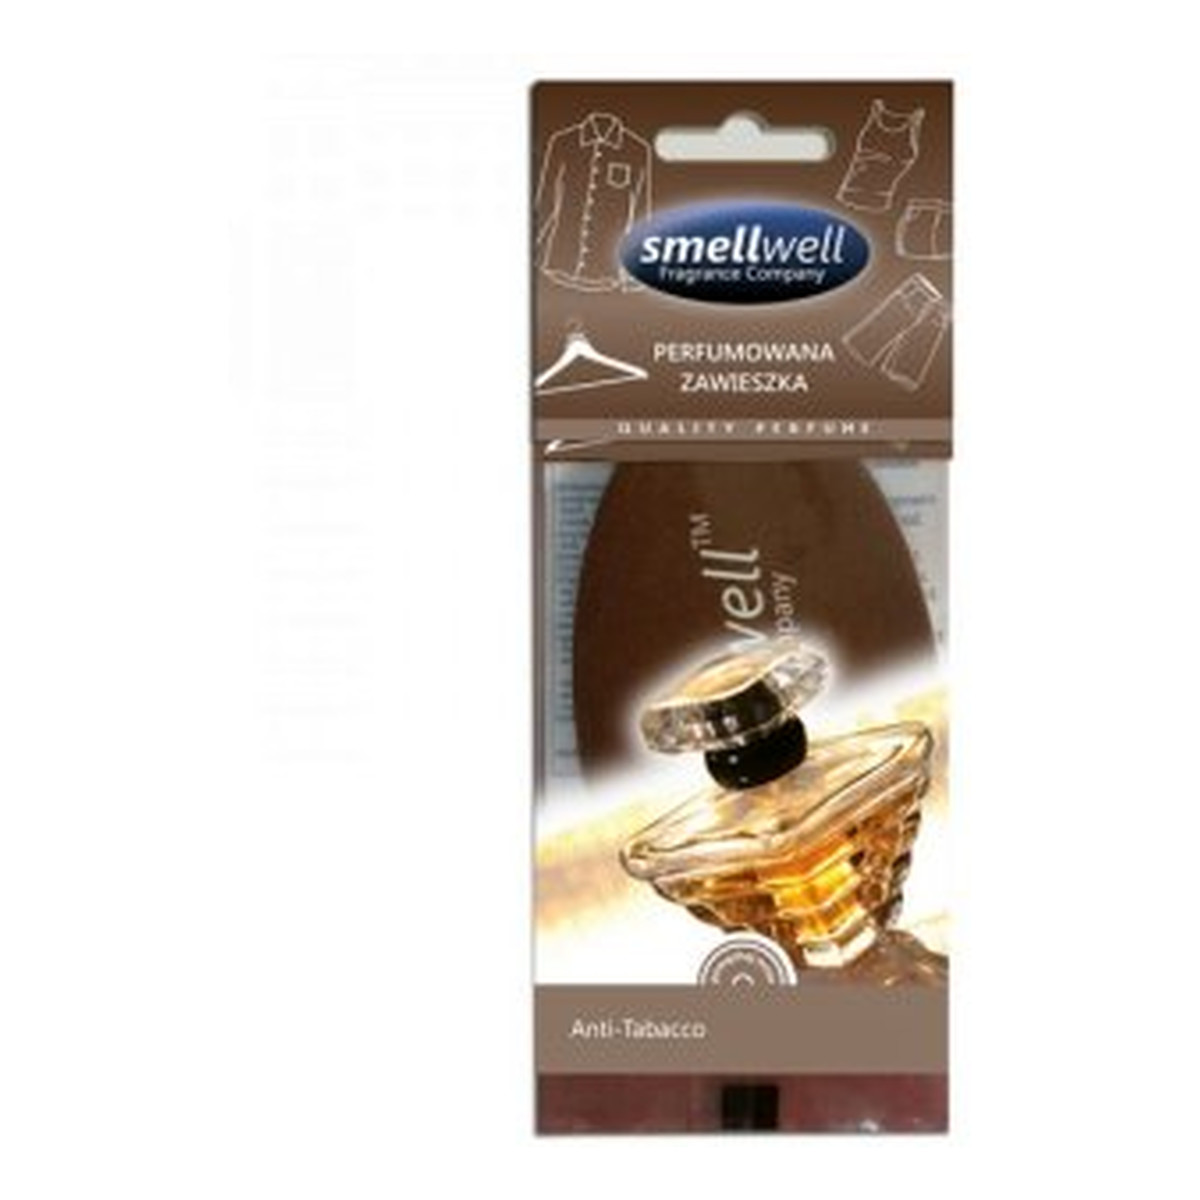 Smellwell Perfumowana zawieszka Anti-Tabacco